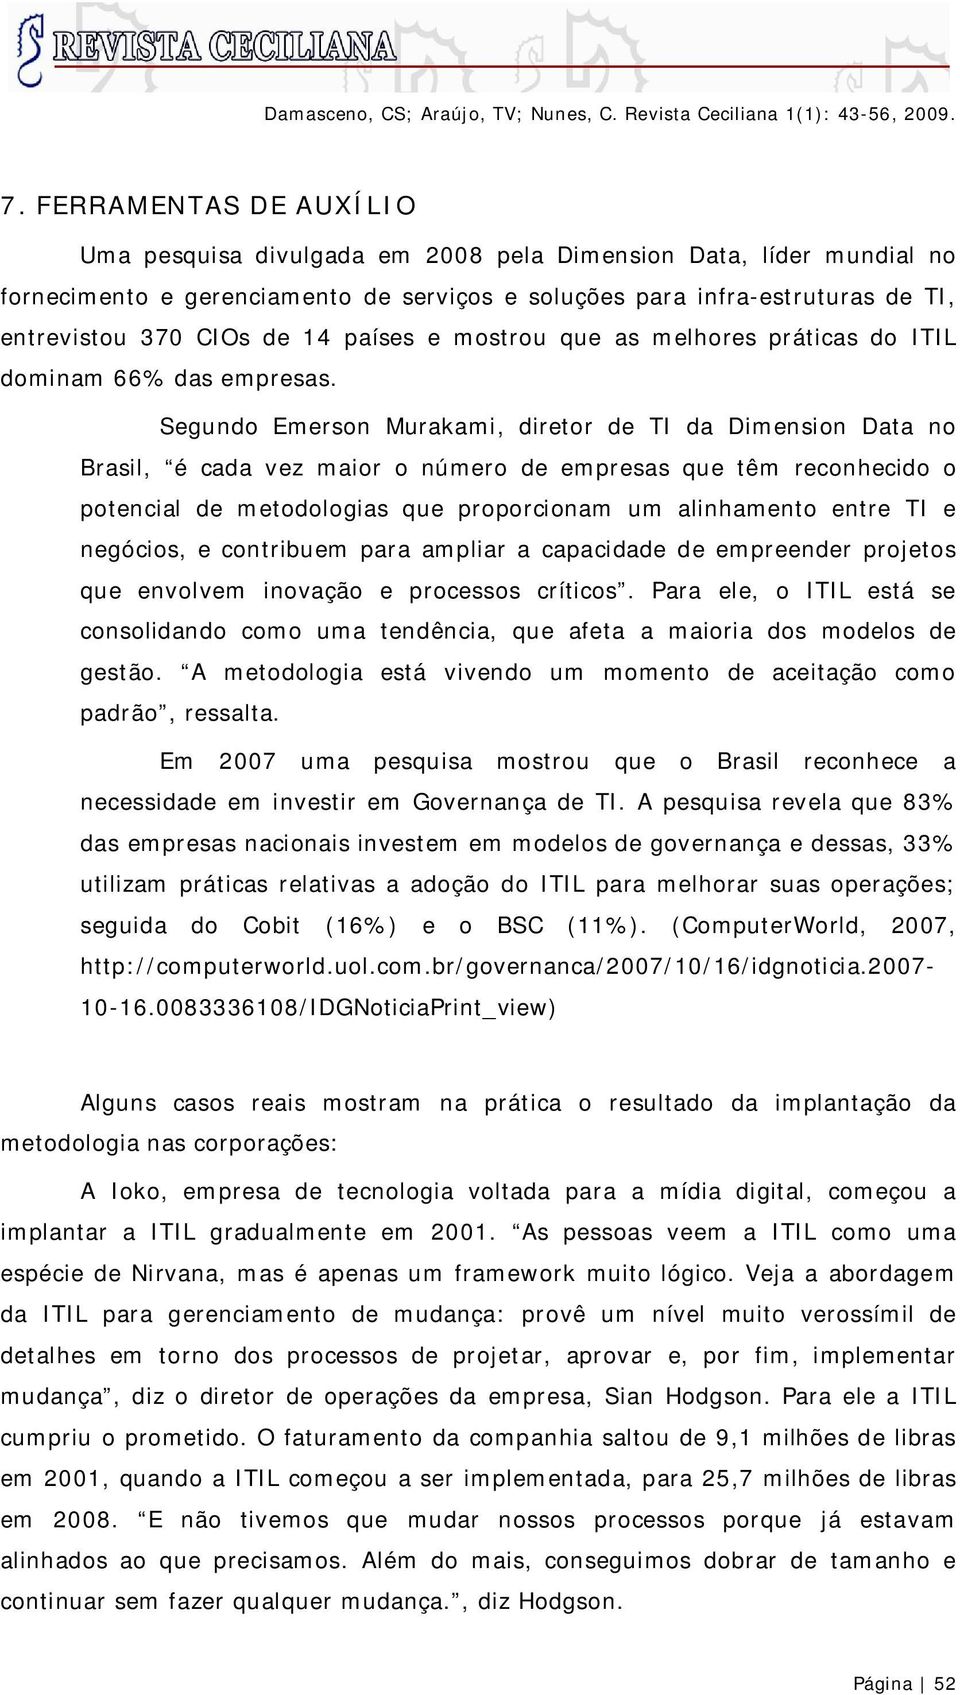 Segundo Emerson Murakami, diretor de TI da Dimension Data no Brasil, é cada vez maior o número de empresas que têm reconhecido o potencial de metodologias que proporcionam um alinhamento entre TI e